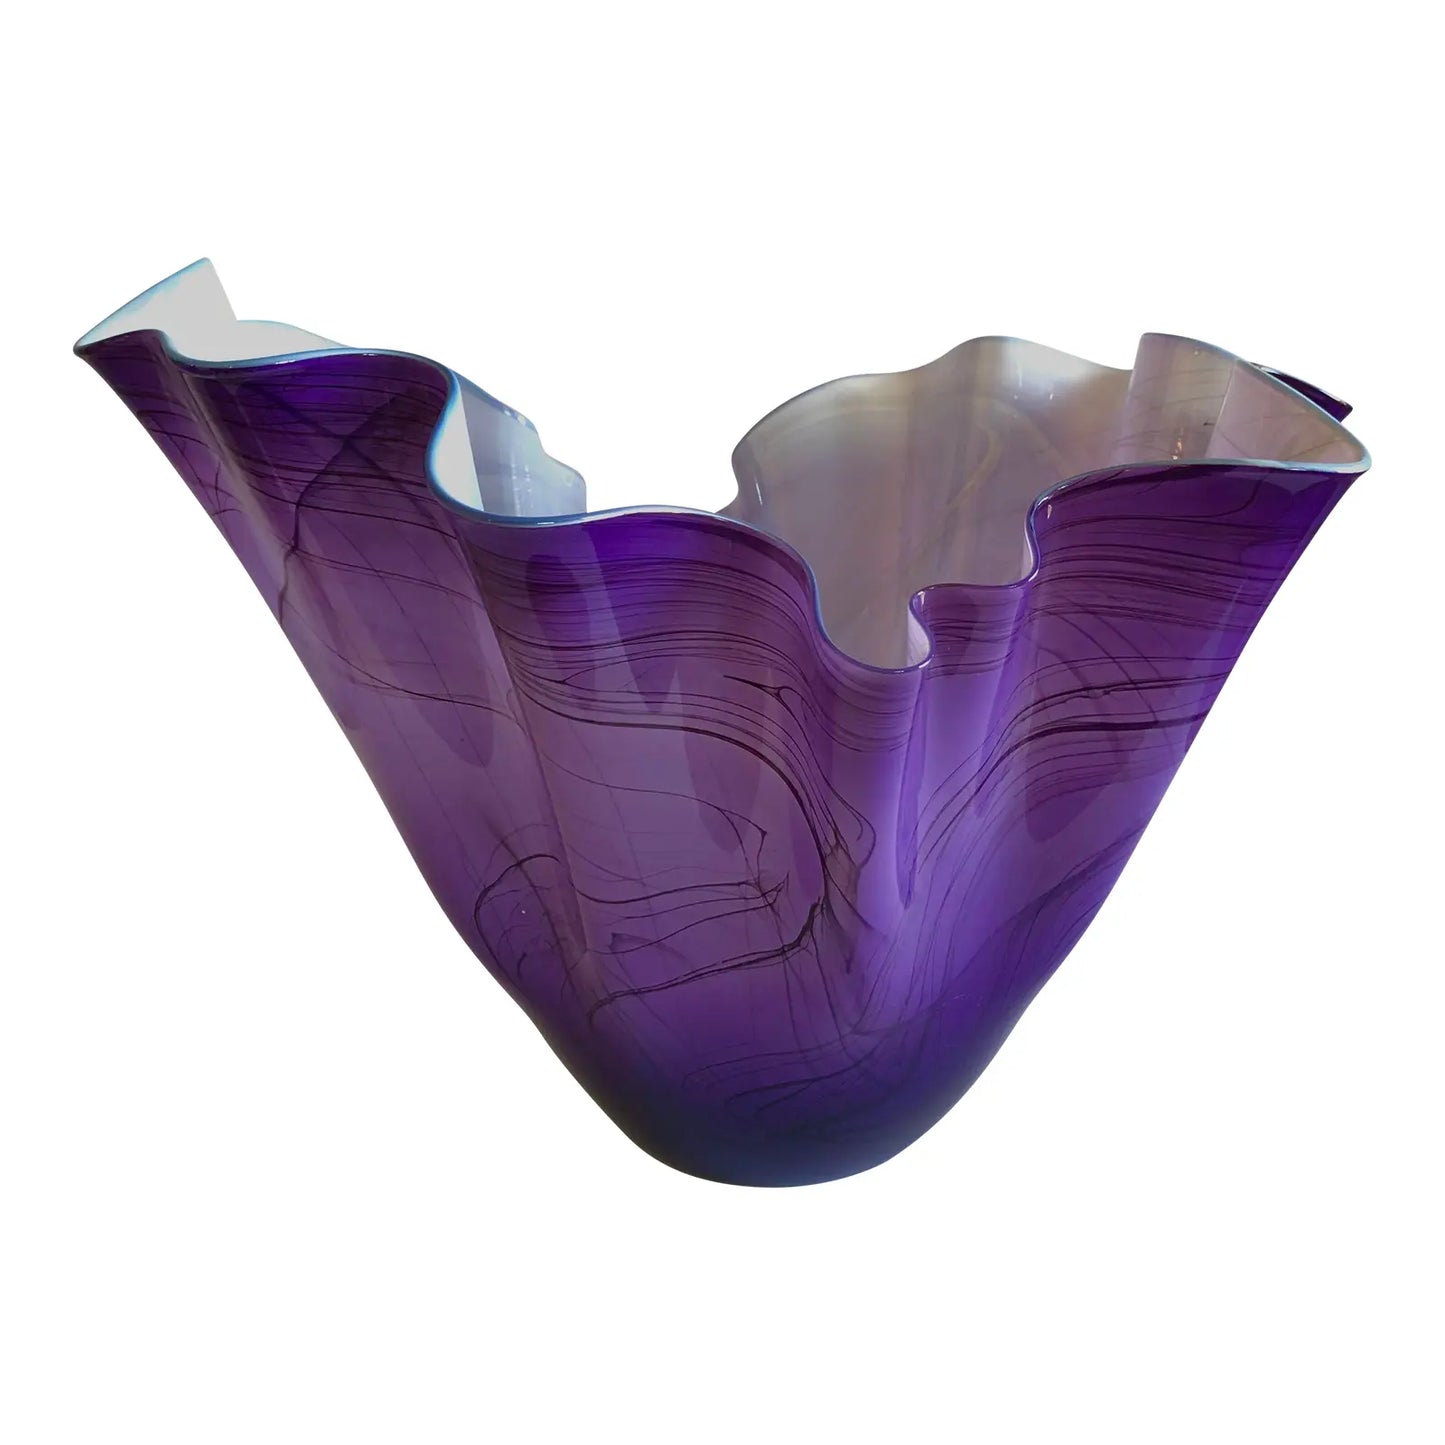 1990s Mouth Blown Glass Bowl Sculpture by Artist Dan Bergsma